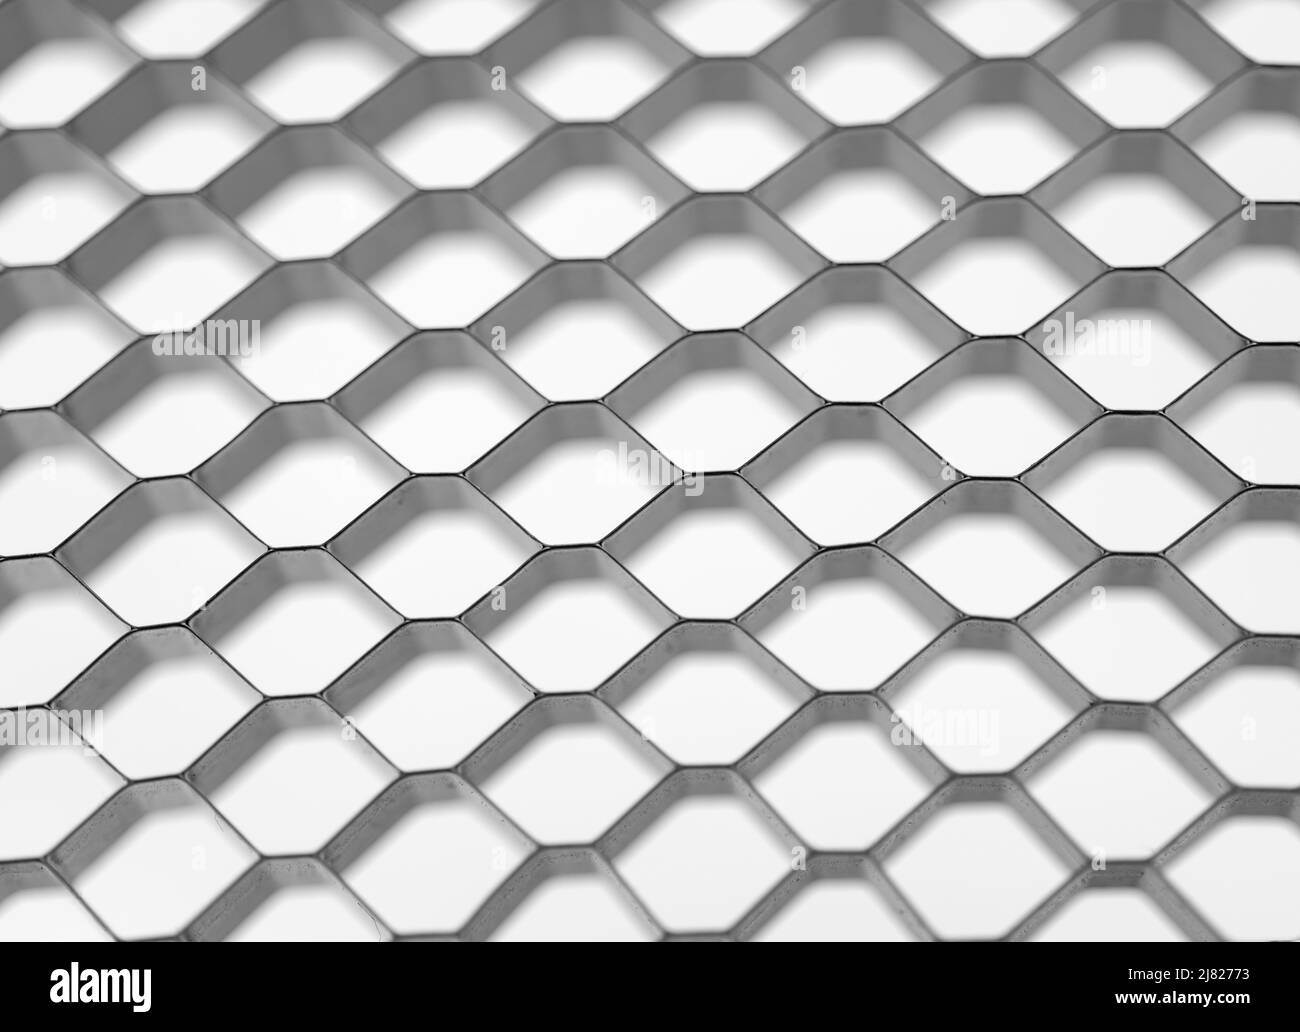 Mosaïque en nid d'abeille, fond blanc. Structure géométrique des cellules de maillage. Arrière-plan blanc abstrait avec grille hexagonale. Banque D'Images